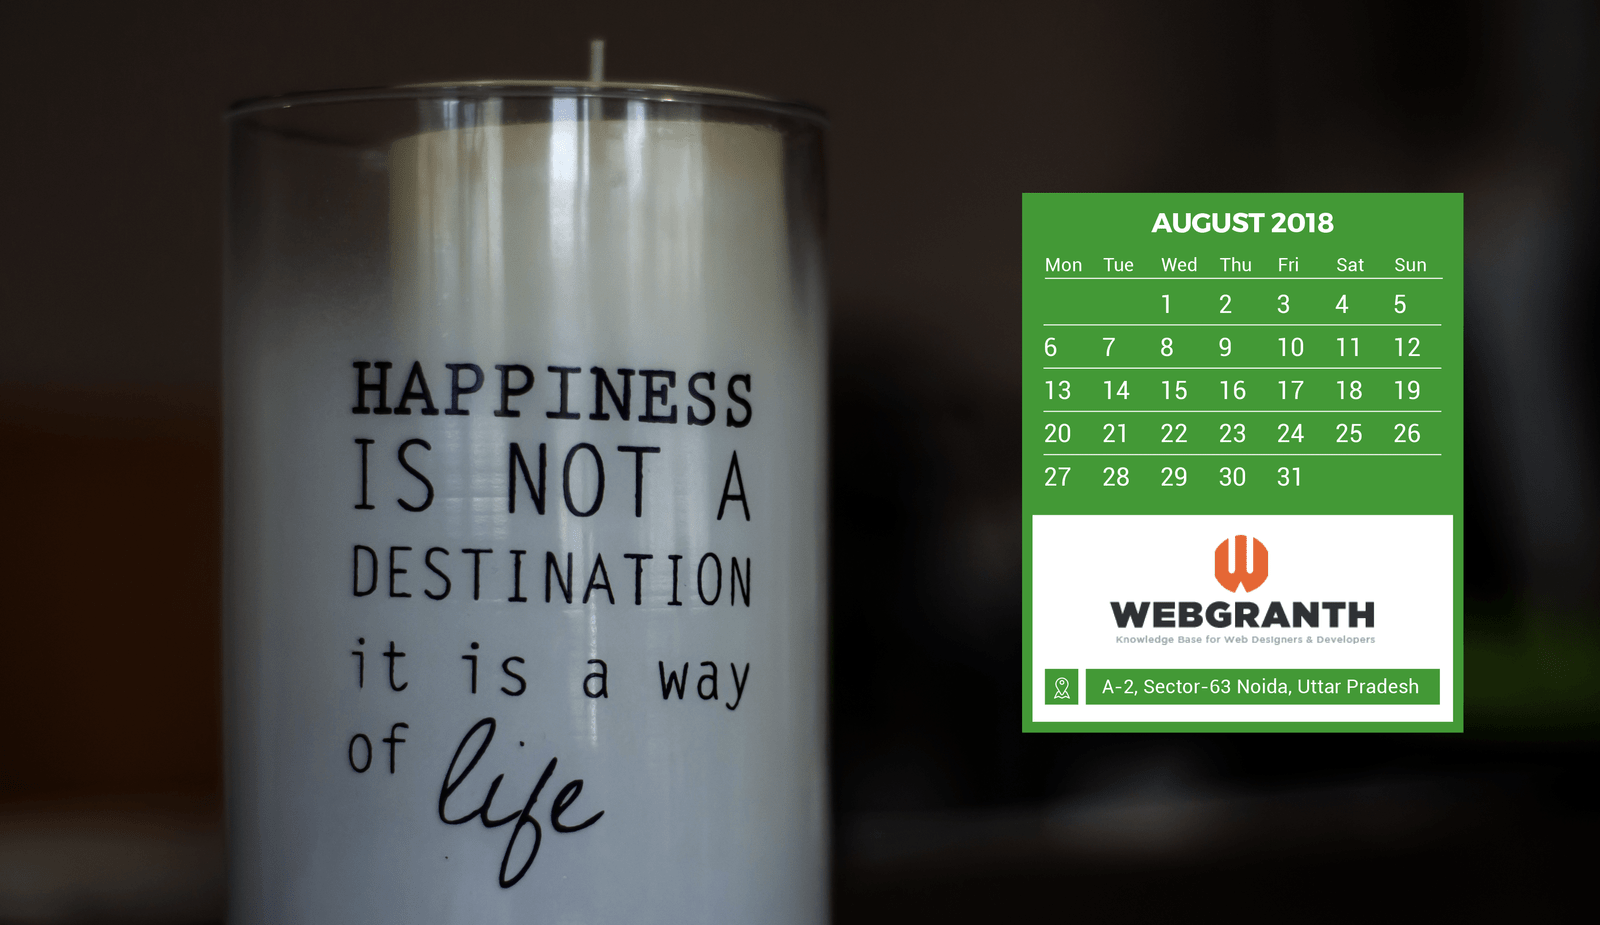 HD-August-Calendar-Wallpaper-2018: View